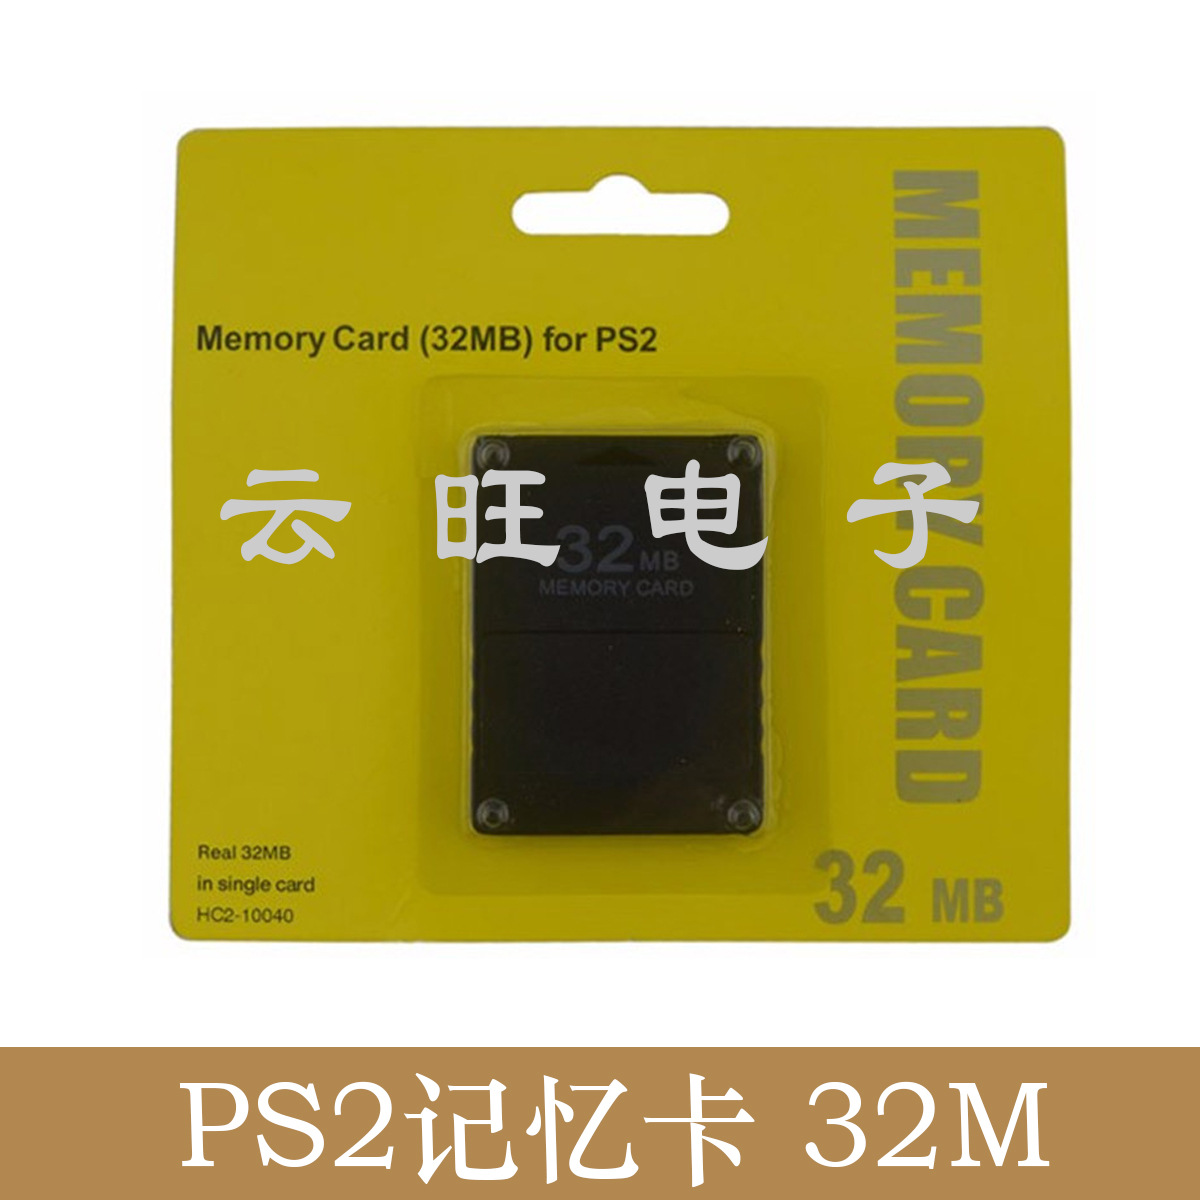 现货供应PS2记忆卡PS2黑金刚记忆卡PS2 32M记忆卡PS2组装记忆卡